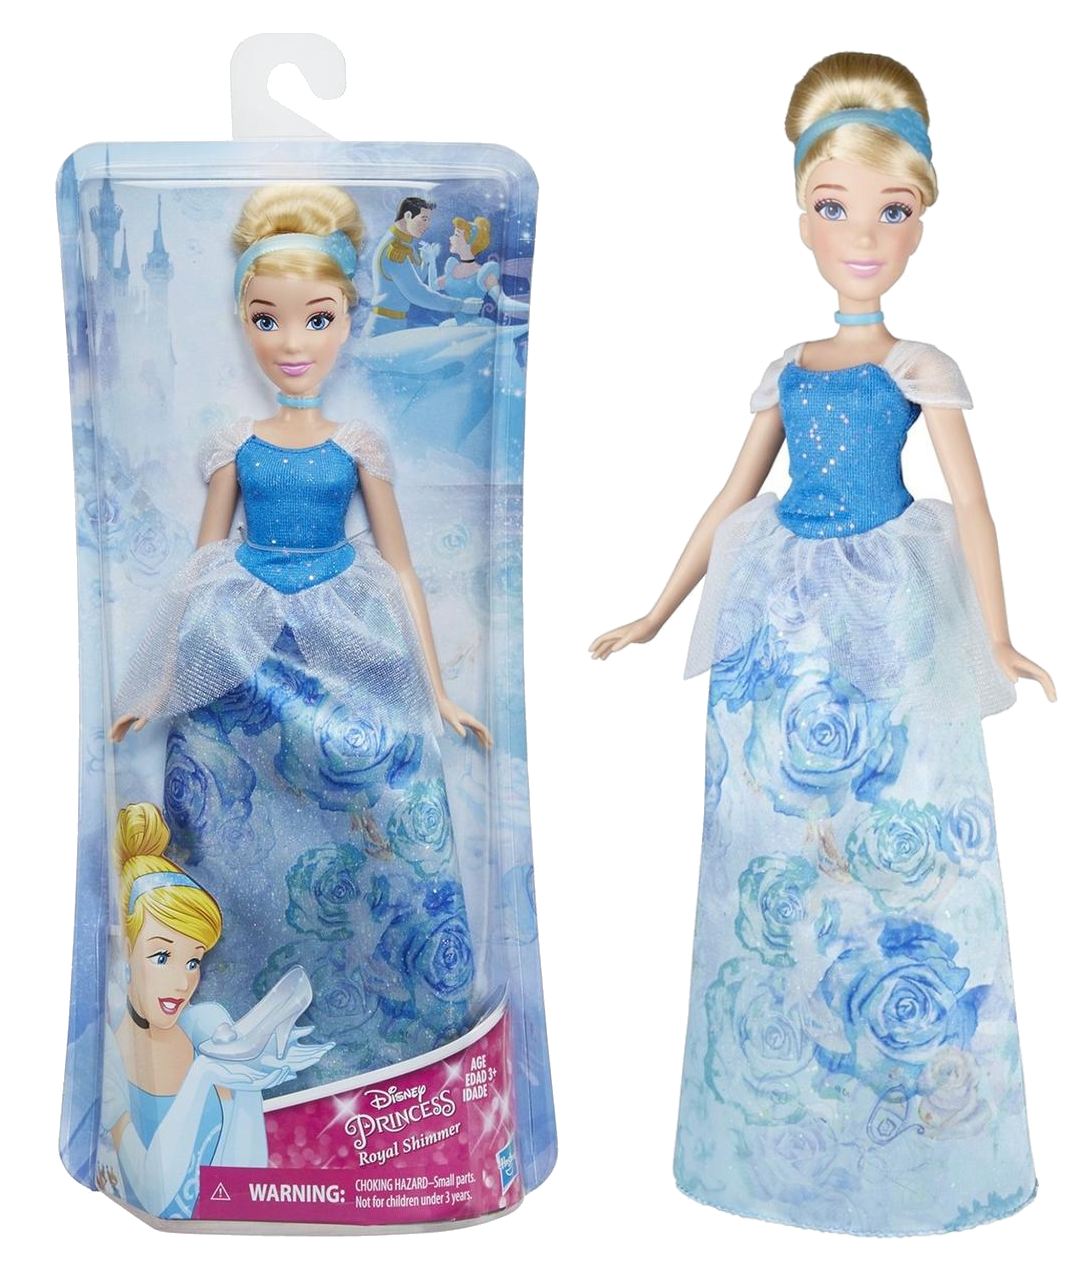 Лялька Попелюшка Disney Princess Принцеса Дісней Hasbro класична E0272